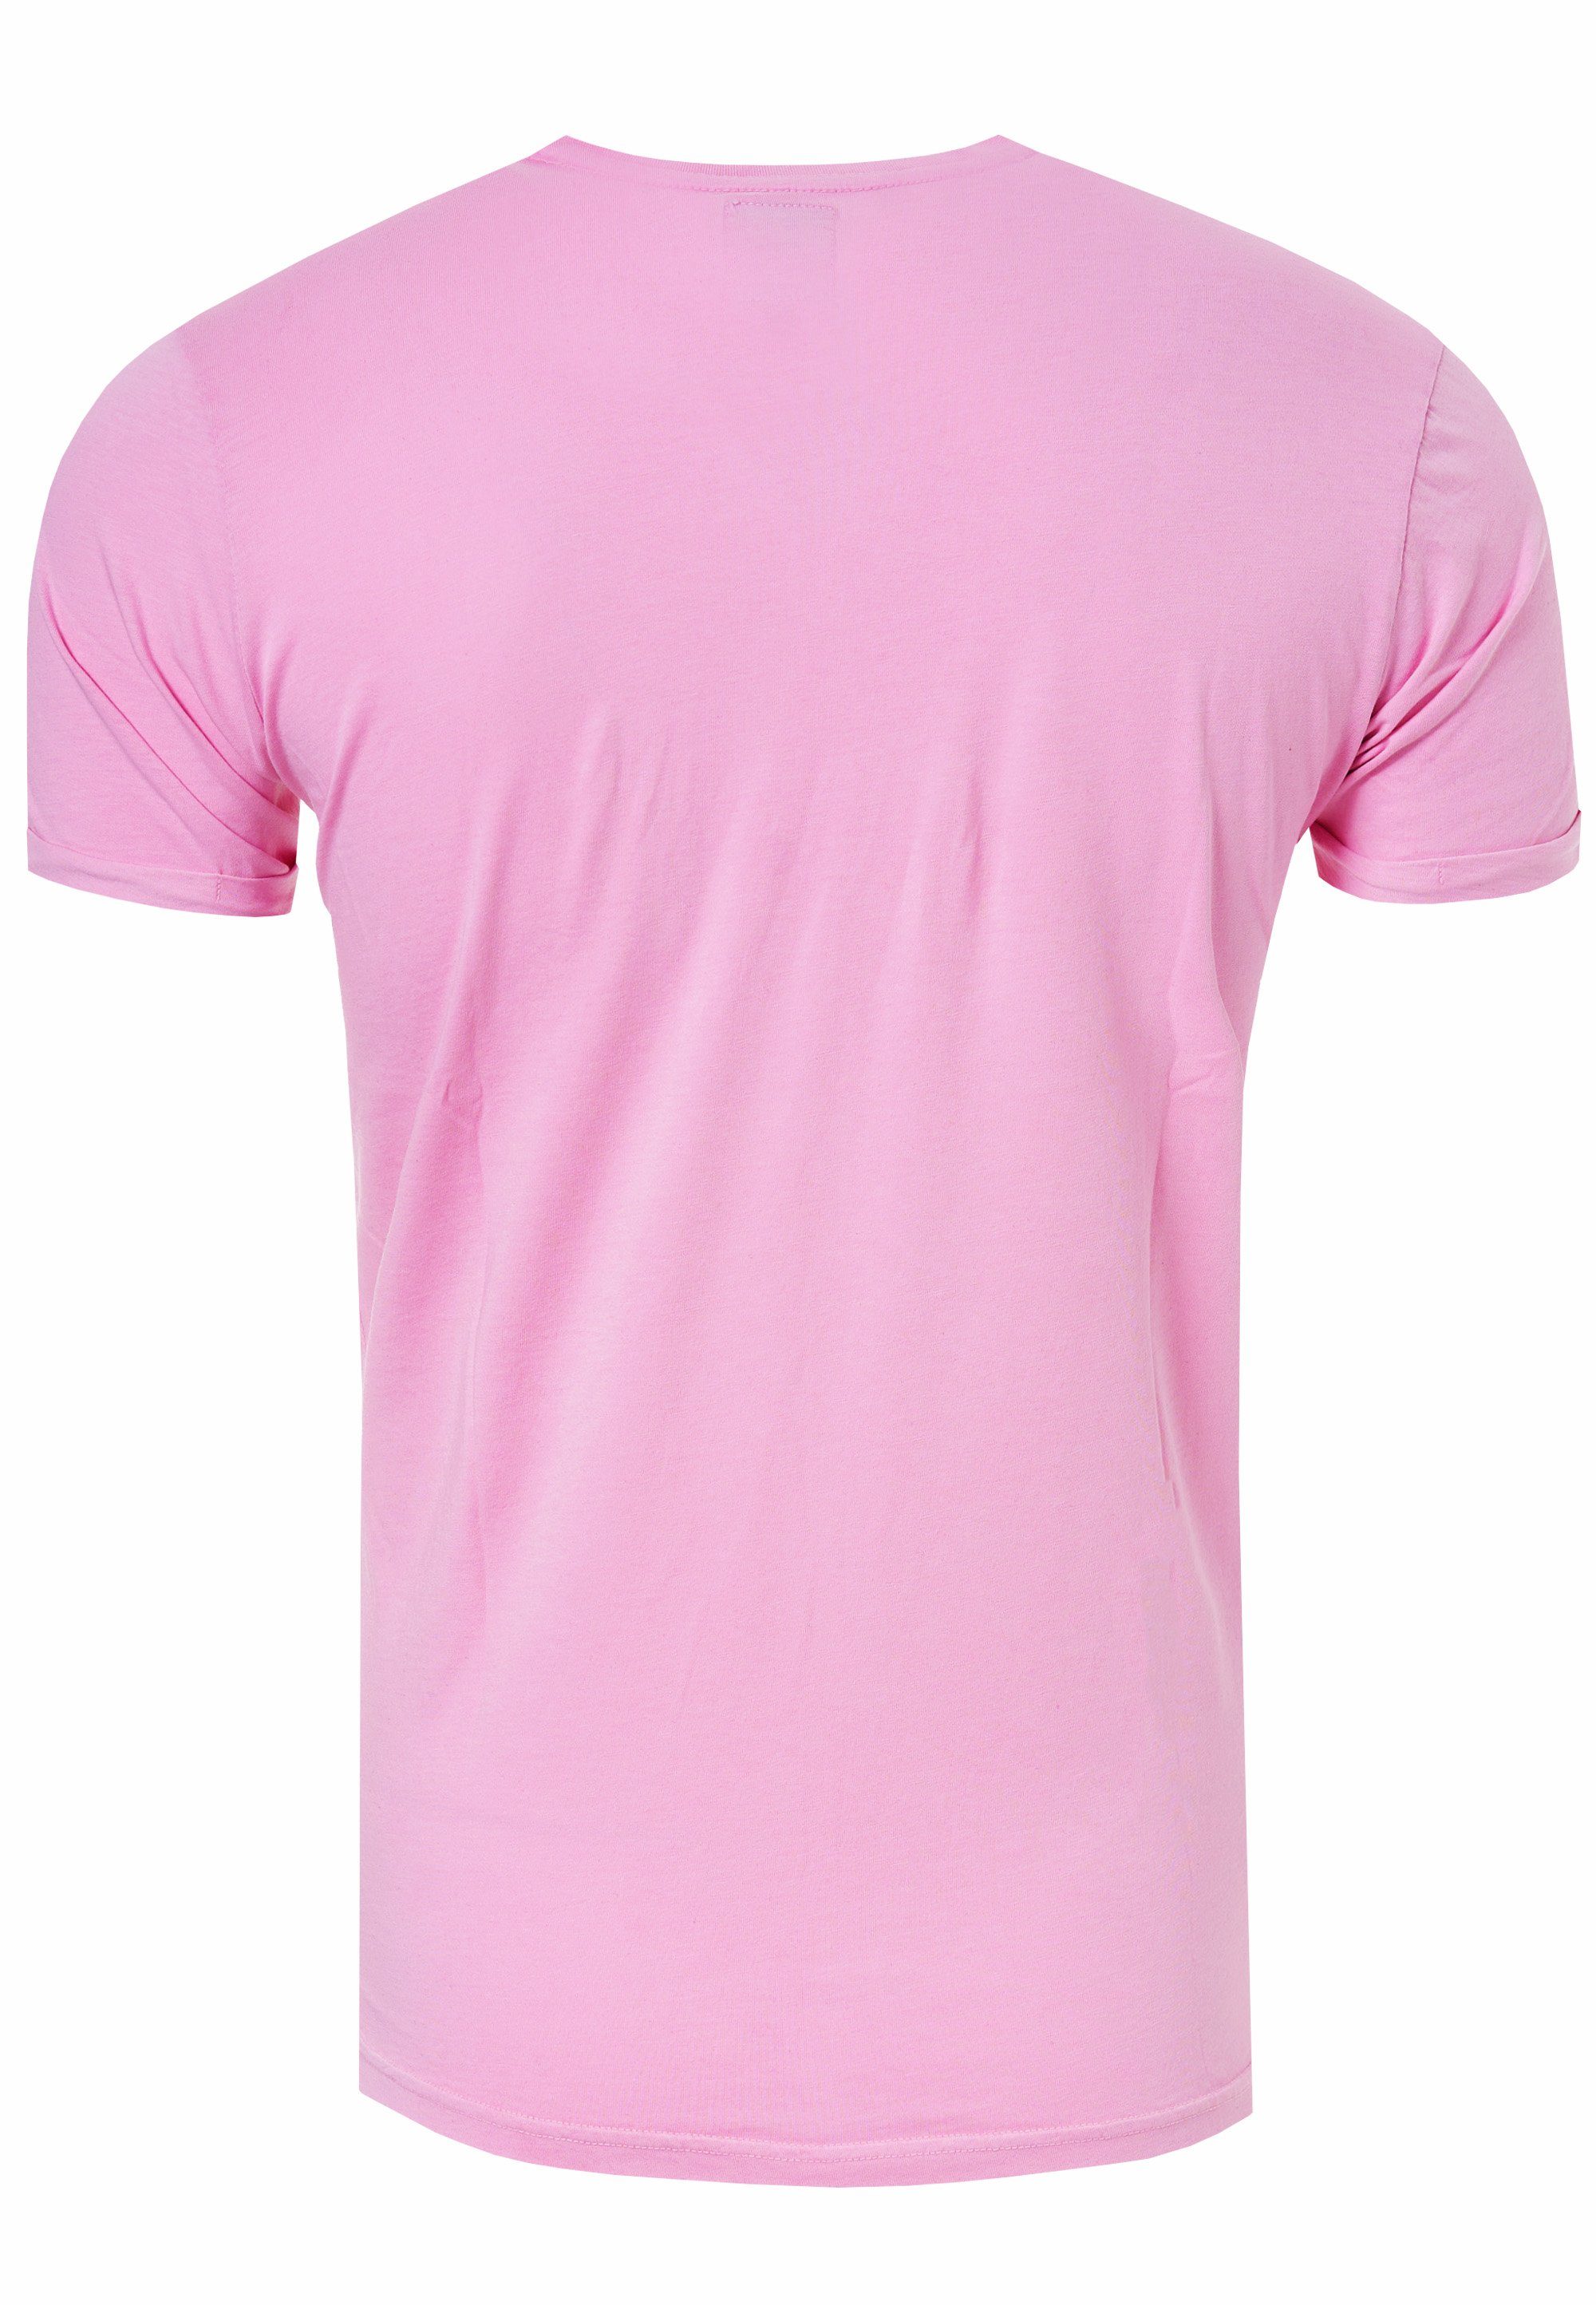 Rusty Neal T-Shirt mit aufgesetzter rosa Brusttasche